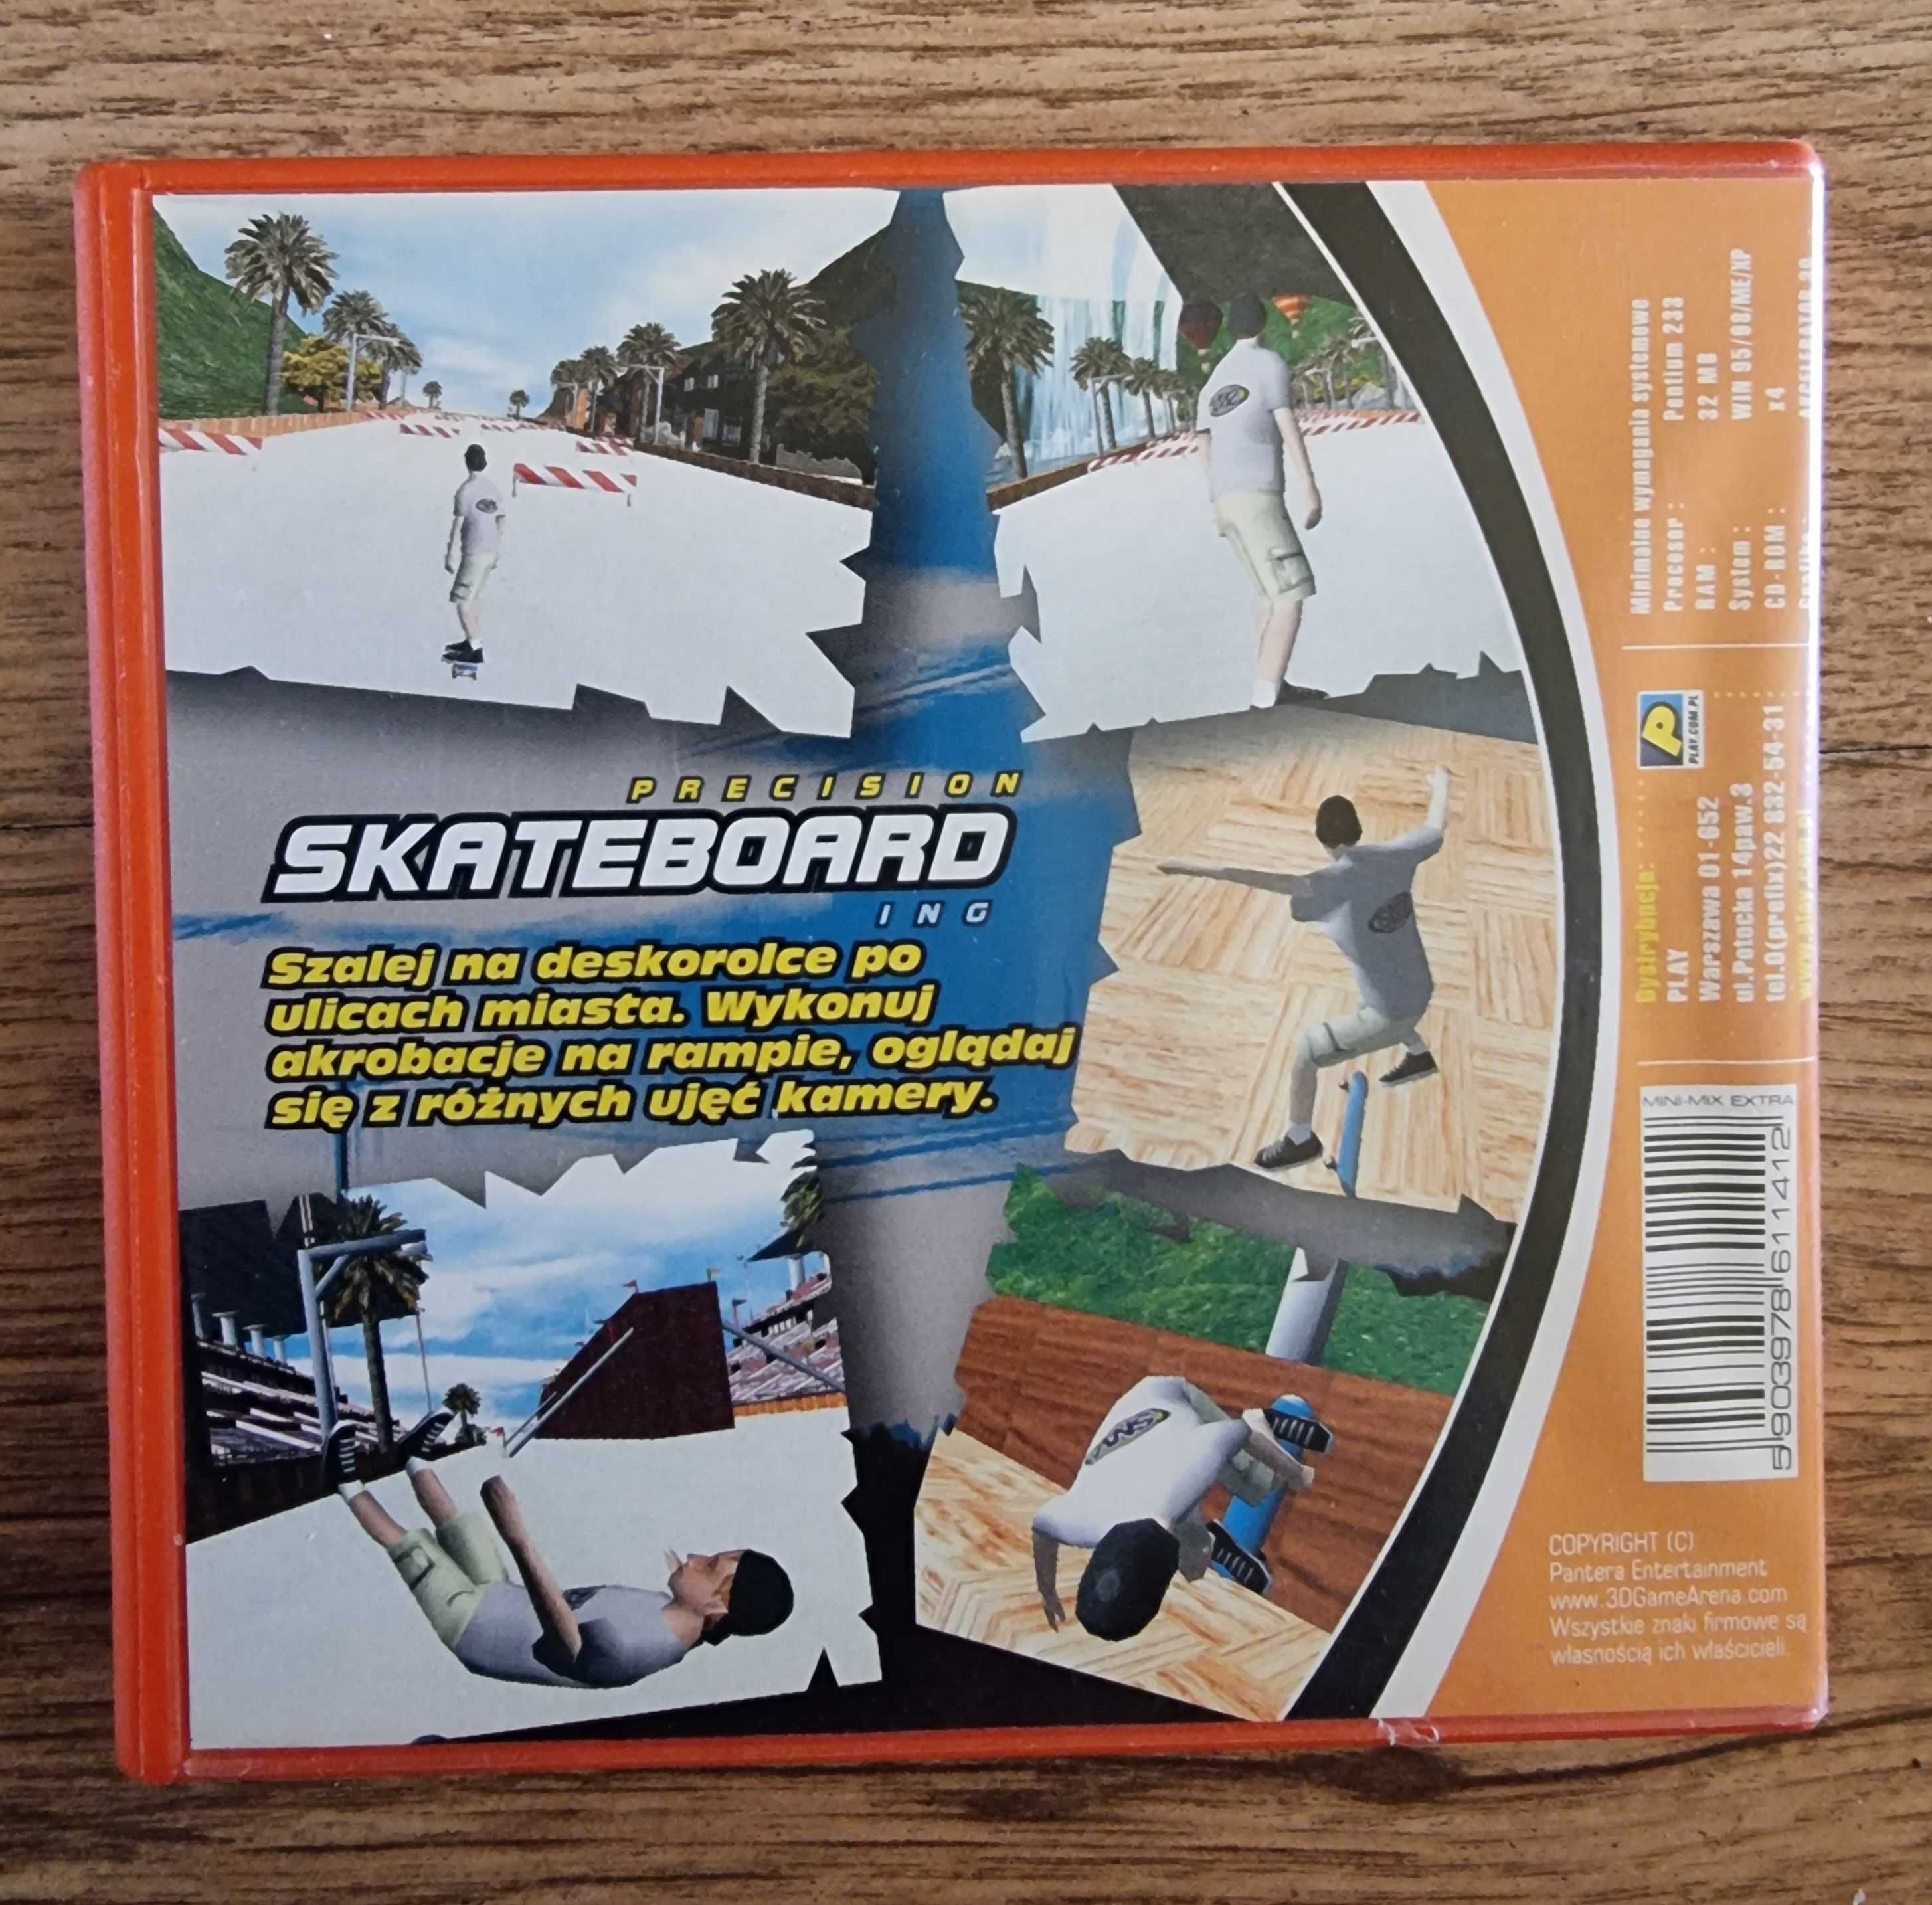 Gra na cd-rom Precision Skateboard Ing.